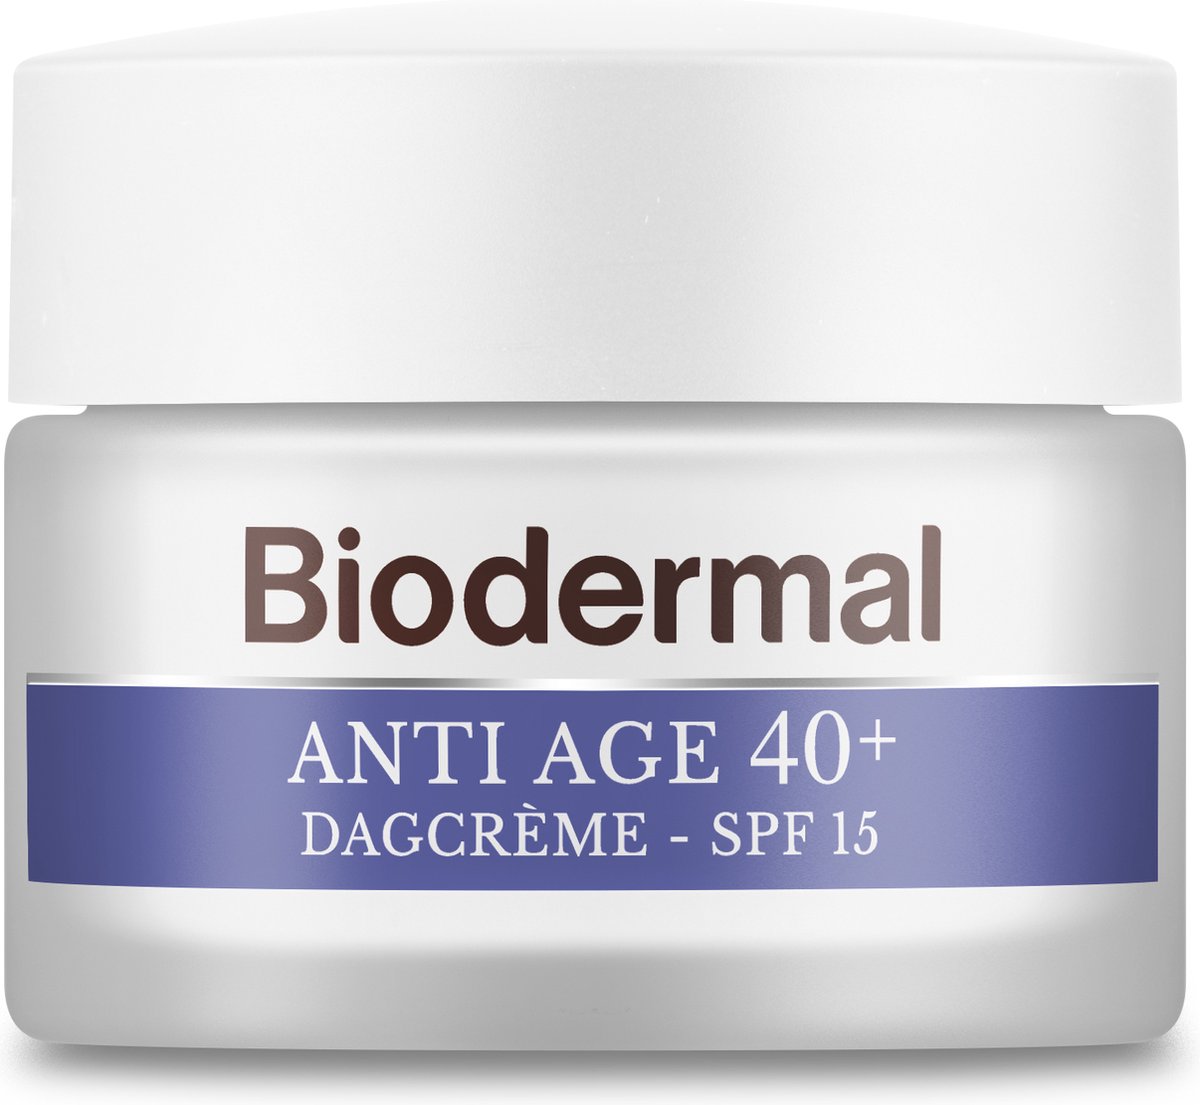 Biodermal Anti Age dagcrème